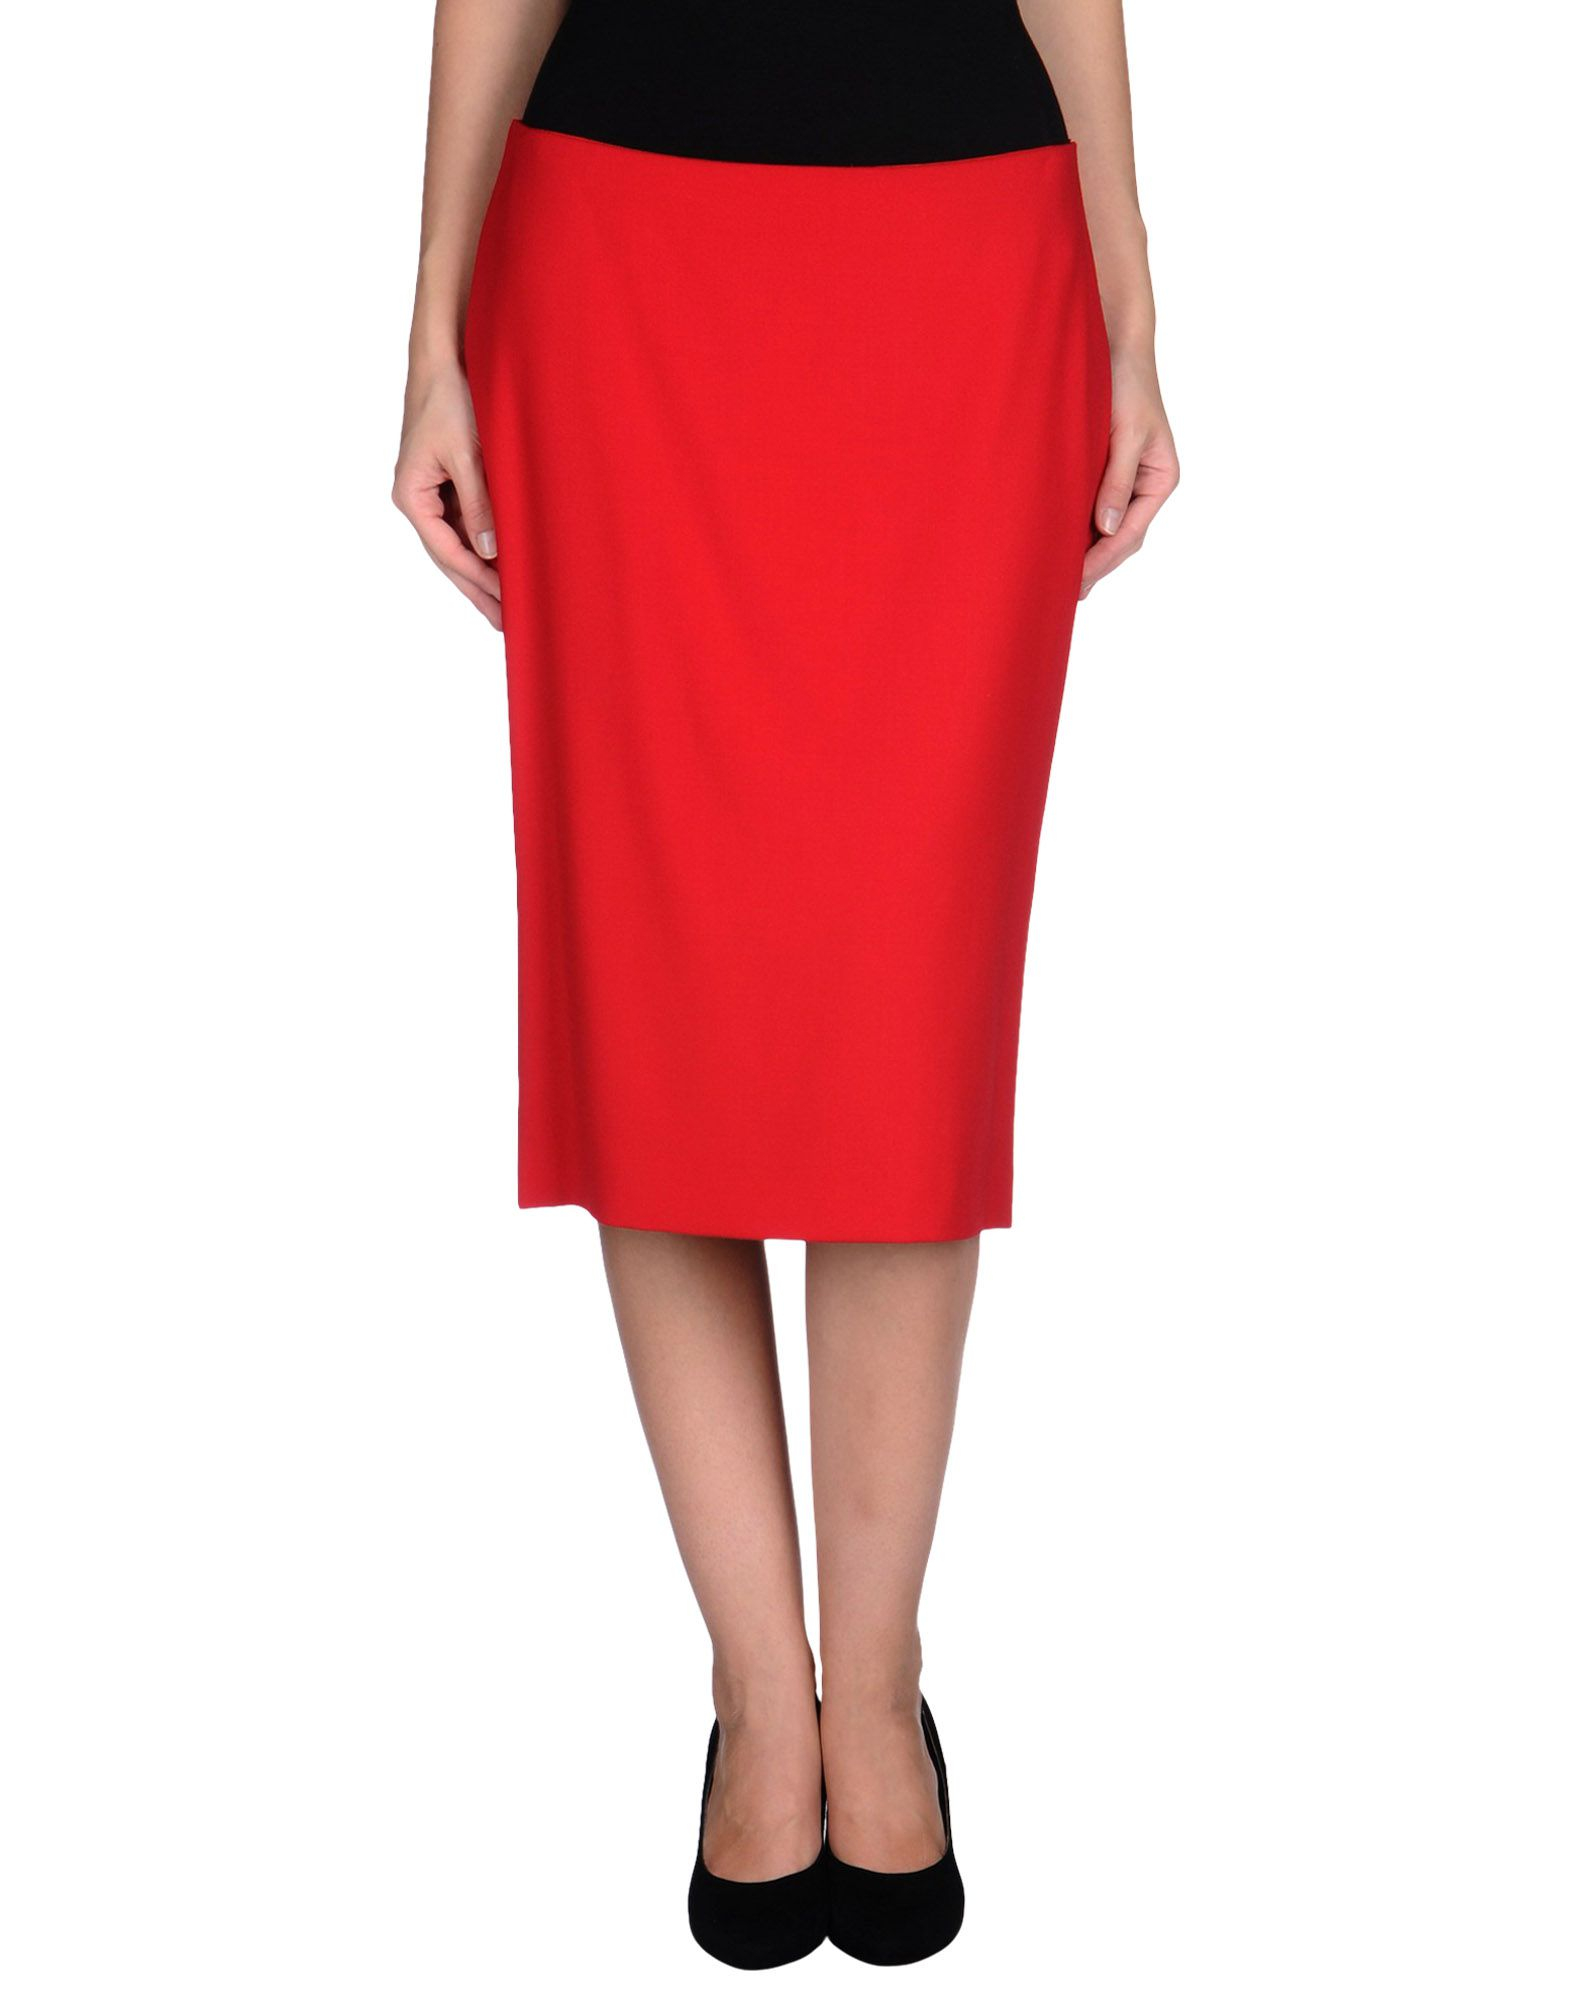 Dolce & gabbana Knee Length Skirt in Red | Lyst